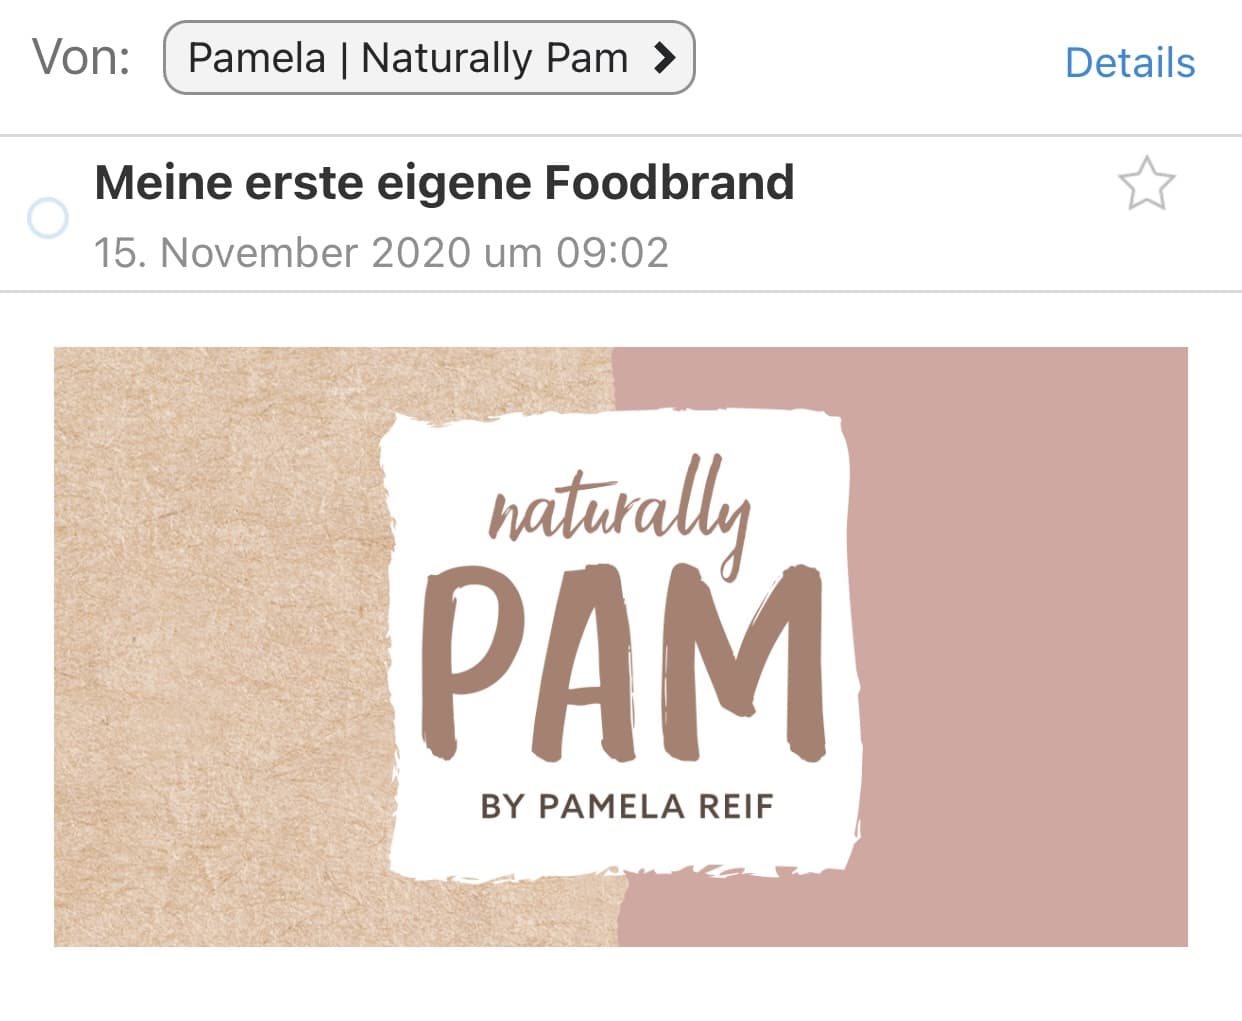 Naturally Pam